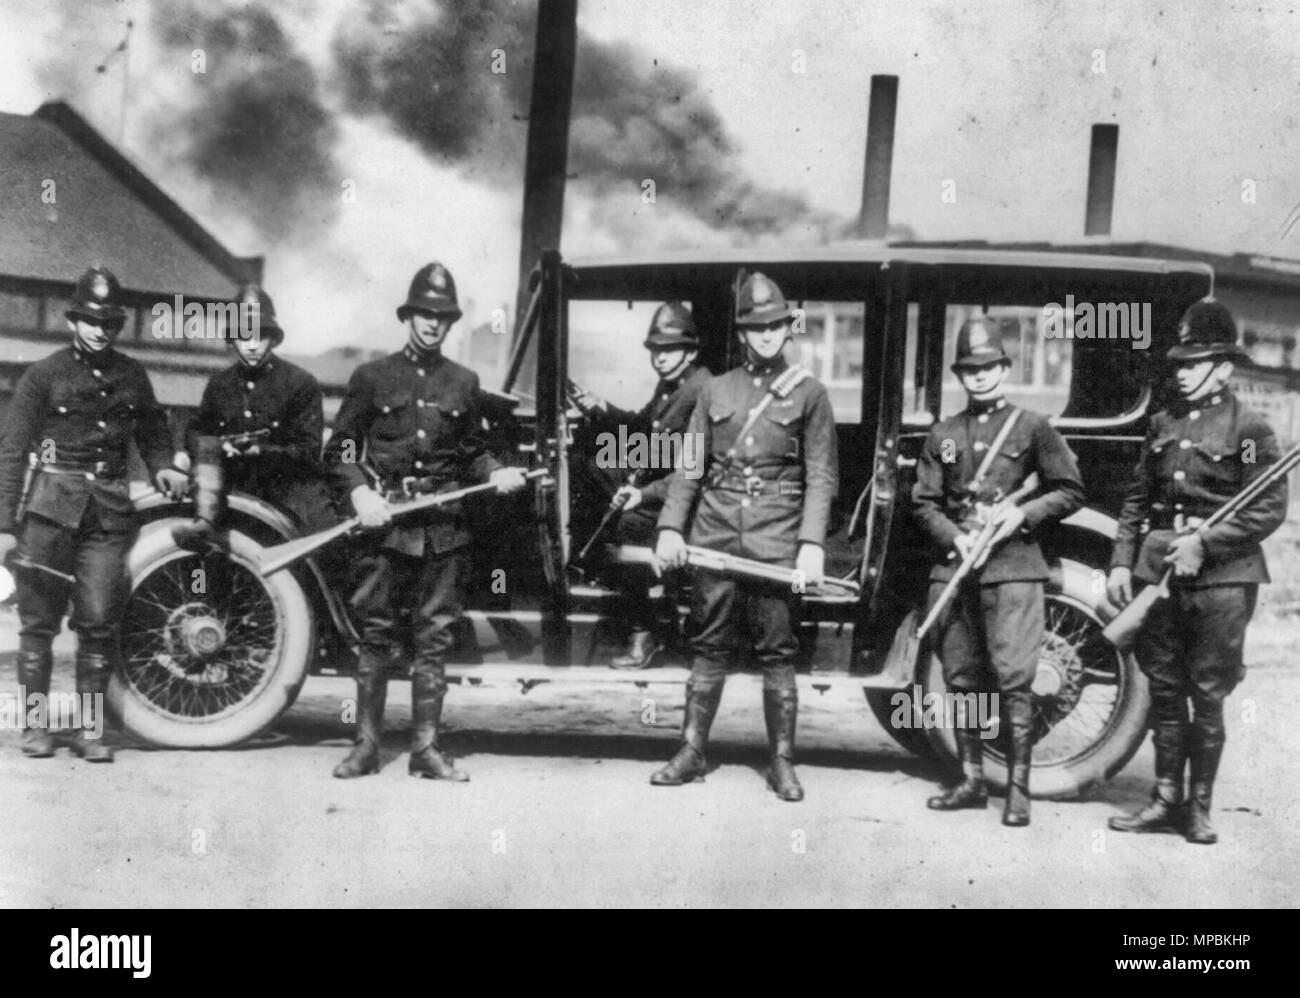 Ultime notizie dal distretto di acciaio - Stato troopers pronto per una chiamata in fretta a Farrell, Pennsylvania - sette posti con le pistole di tumulto. 1919 Foto Stock